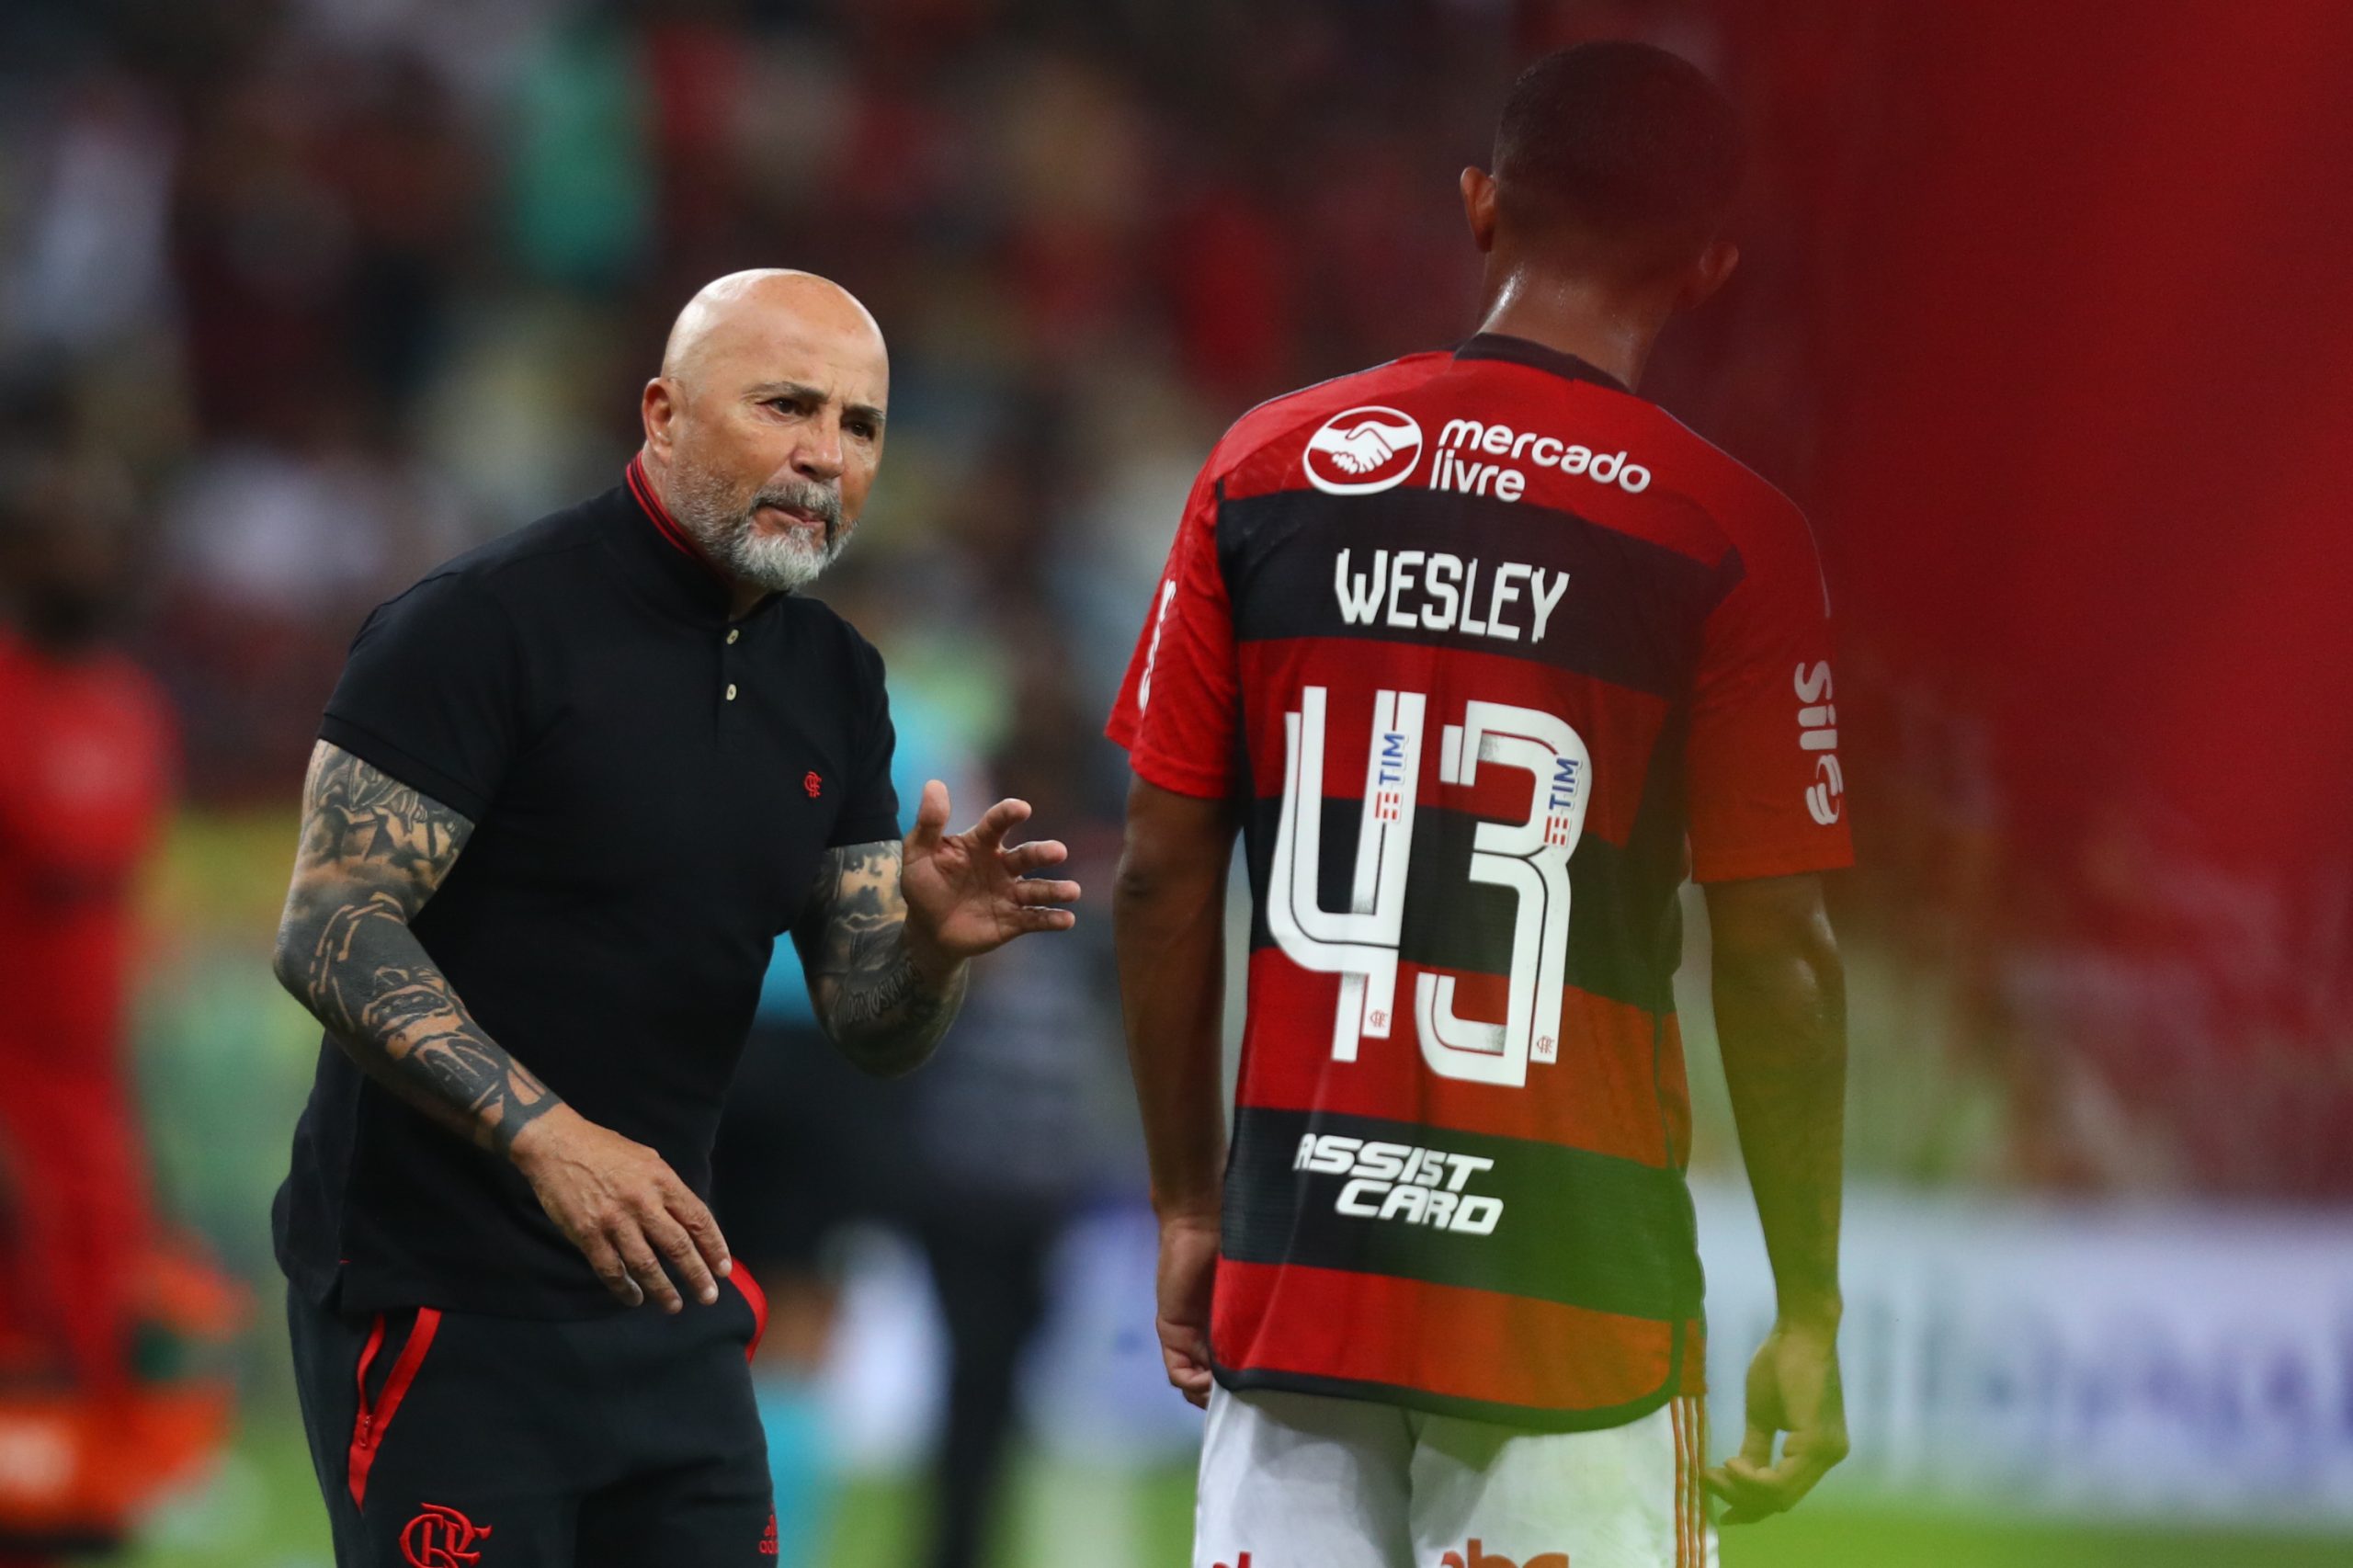 Destaque com Sampaoli, Wesley surge como opção para suprir carência do Flamengo